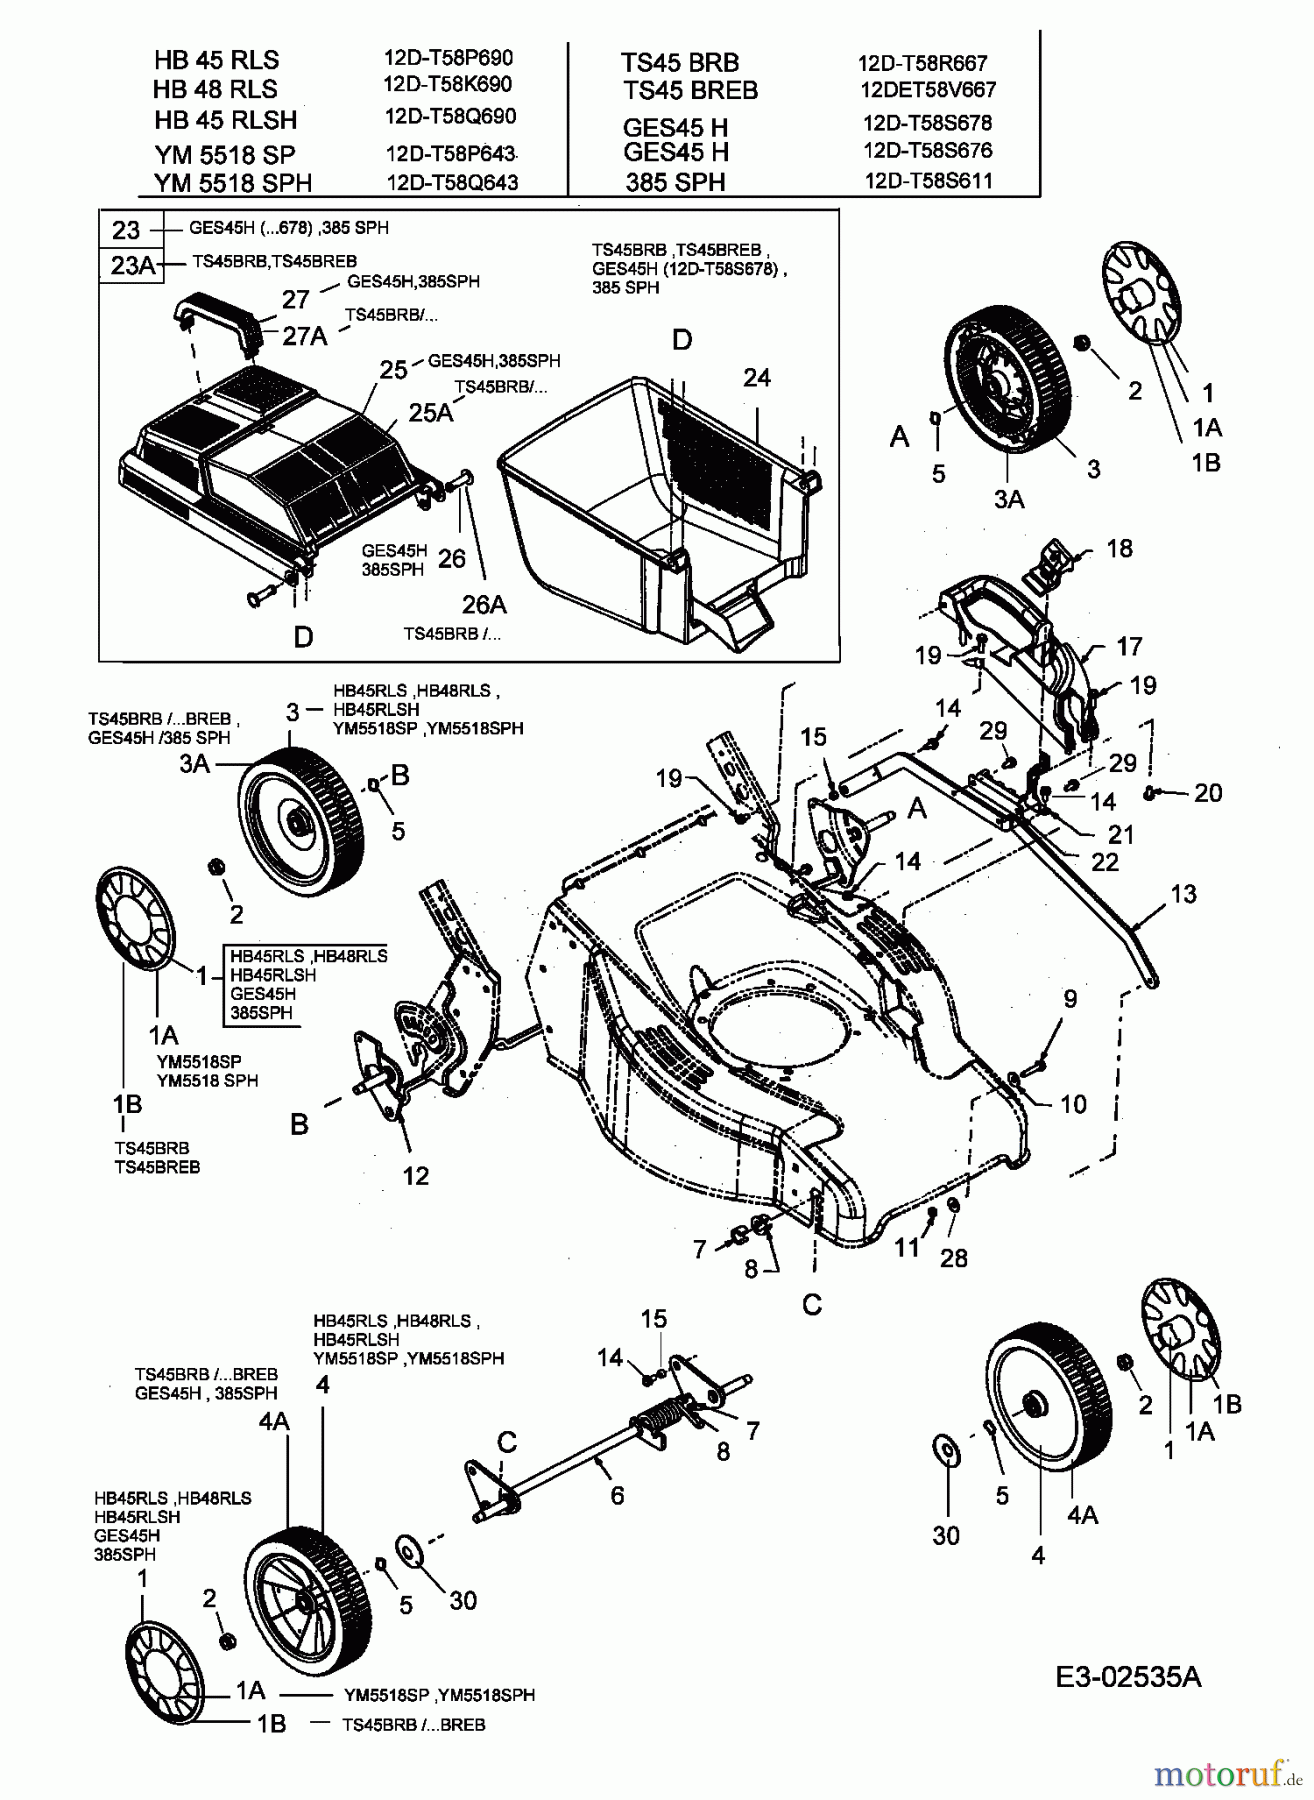  Lawnflite Motormäher mit Antrieb 385 SPH 12D-T58S611  (2005) Grasfangkorb, Höhenverstellung, Räder